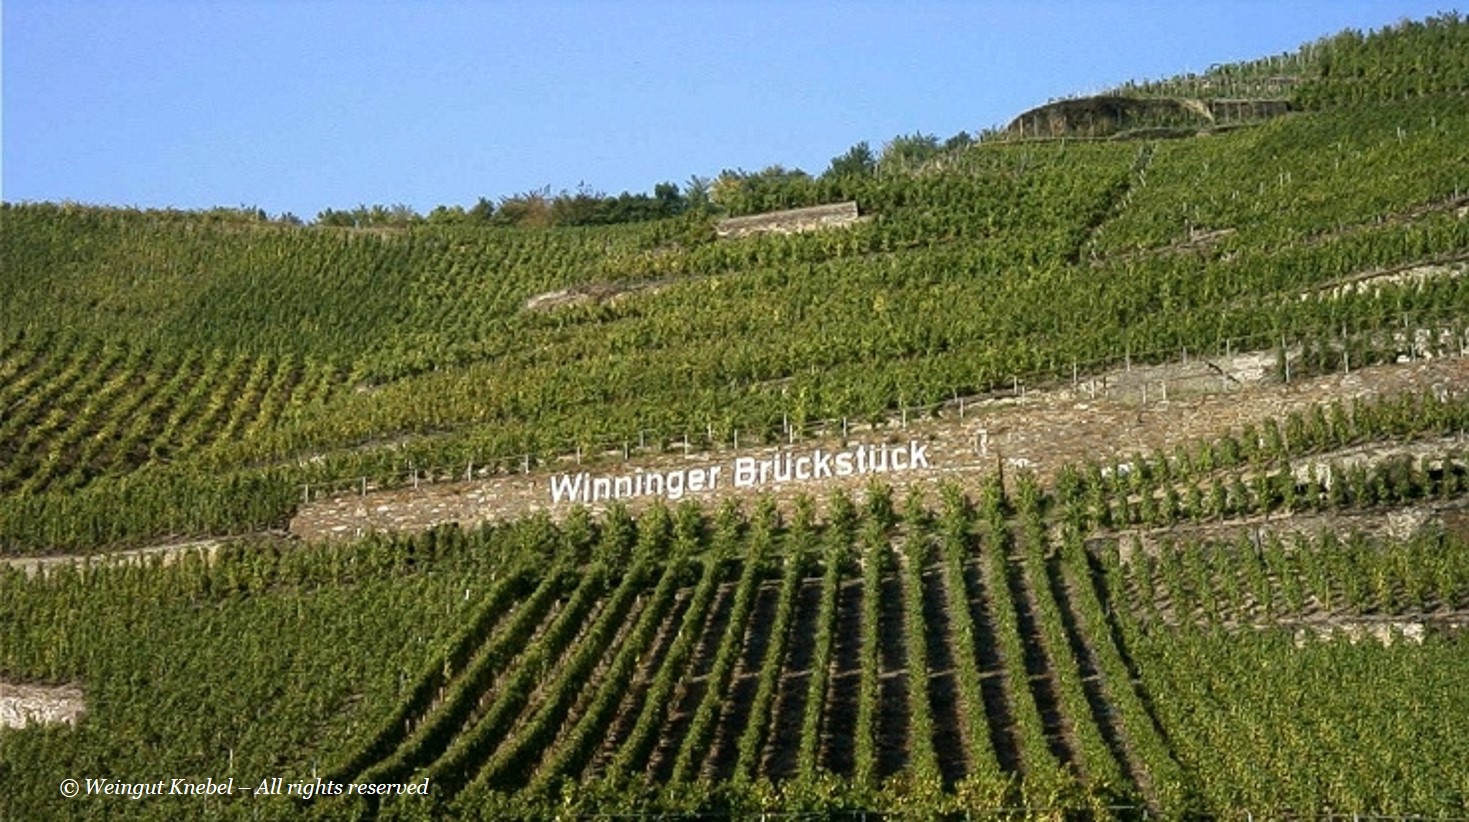 Weingut Knebel | Winninger Brückstück Feinherb 2008 | Label